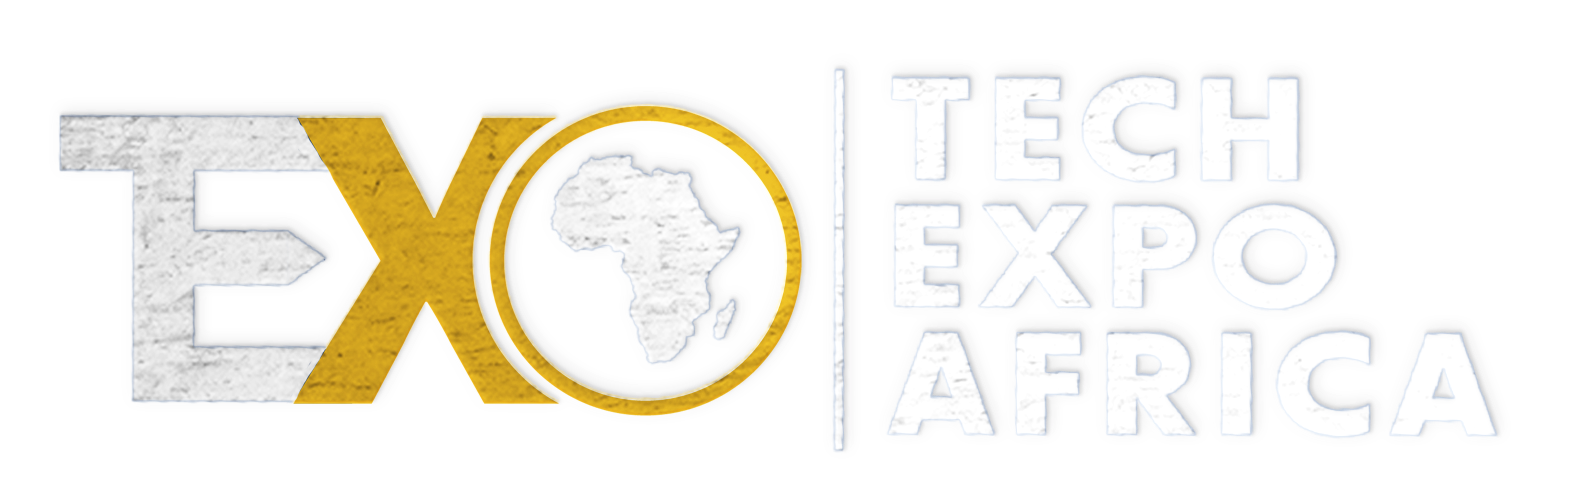 Tech Expo Africa